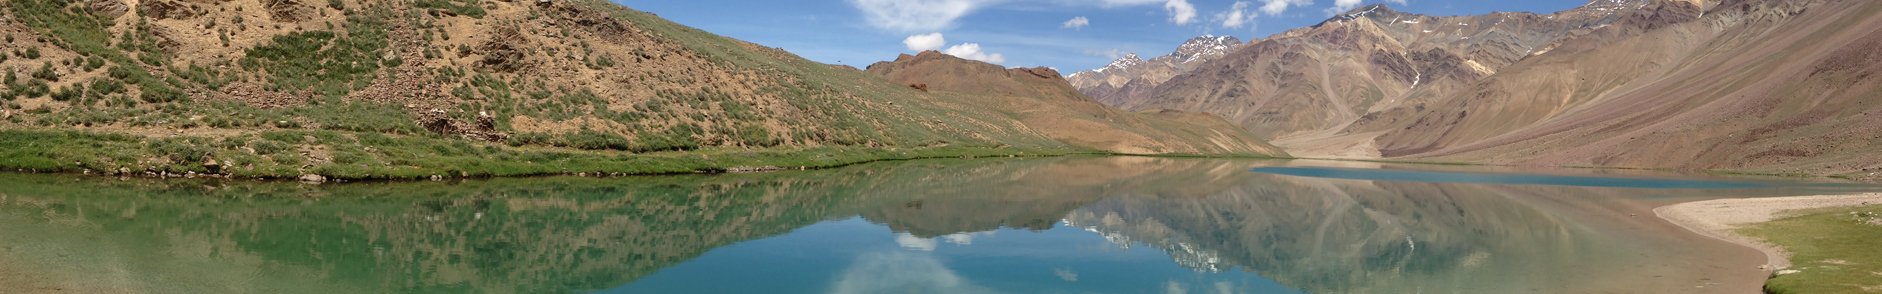 Maharana Pratap Sagar Lake Himachal